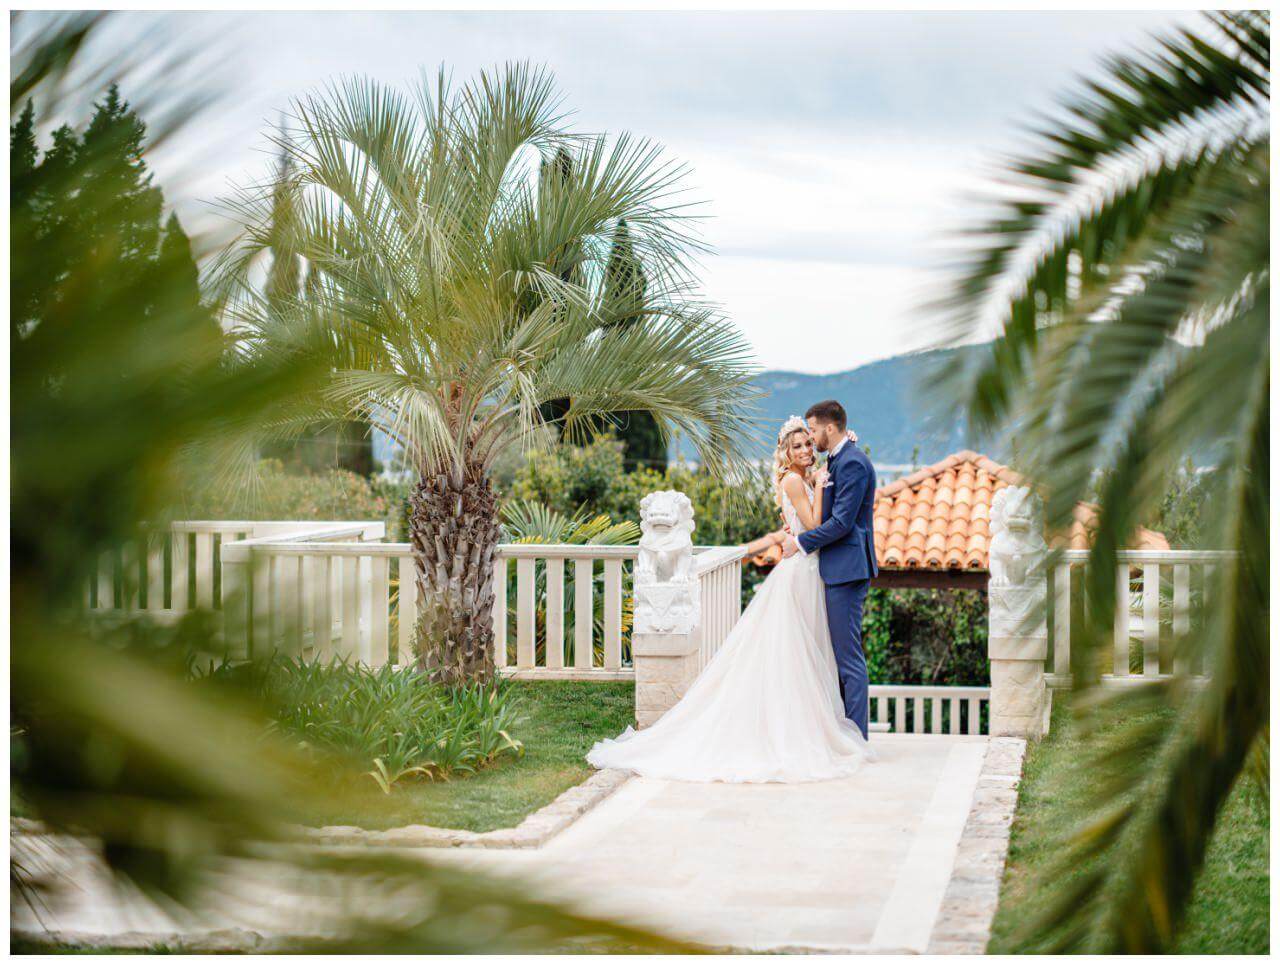 Brautpaar zwischen Palmen im Garten einer Villa in Kroatien Wedding Kroatien, wedding in croatia,hochzeitsplanerin kroatien, hochzeit in kroatien